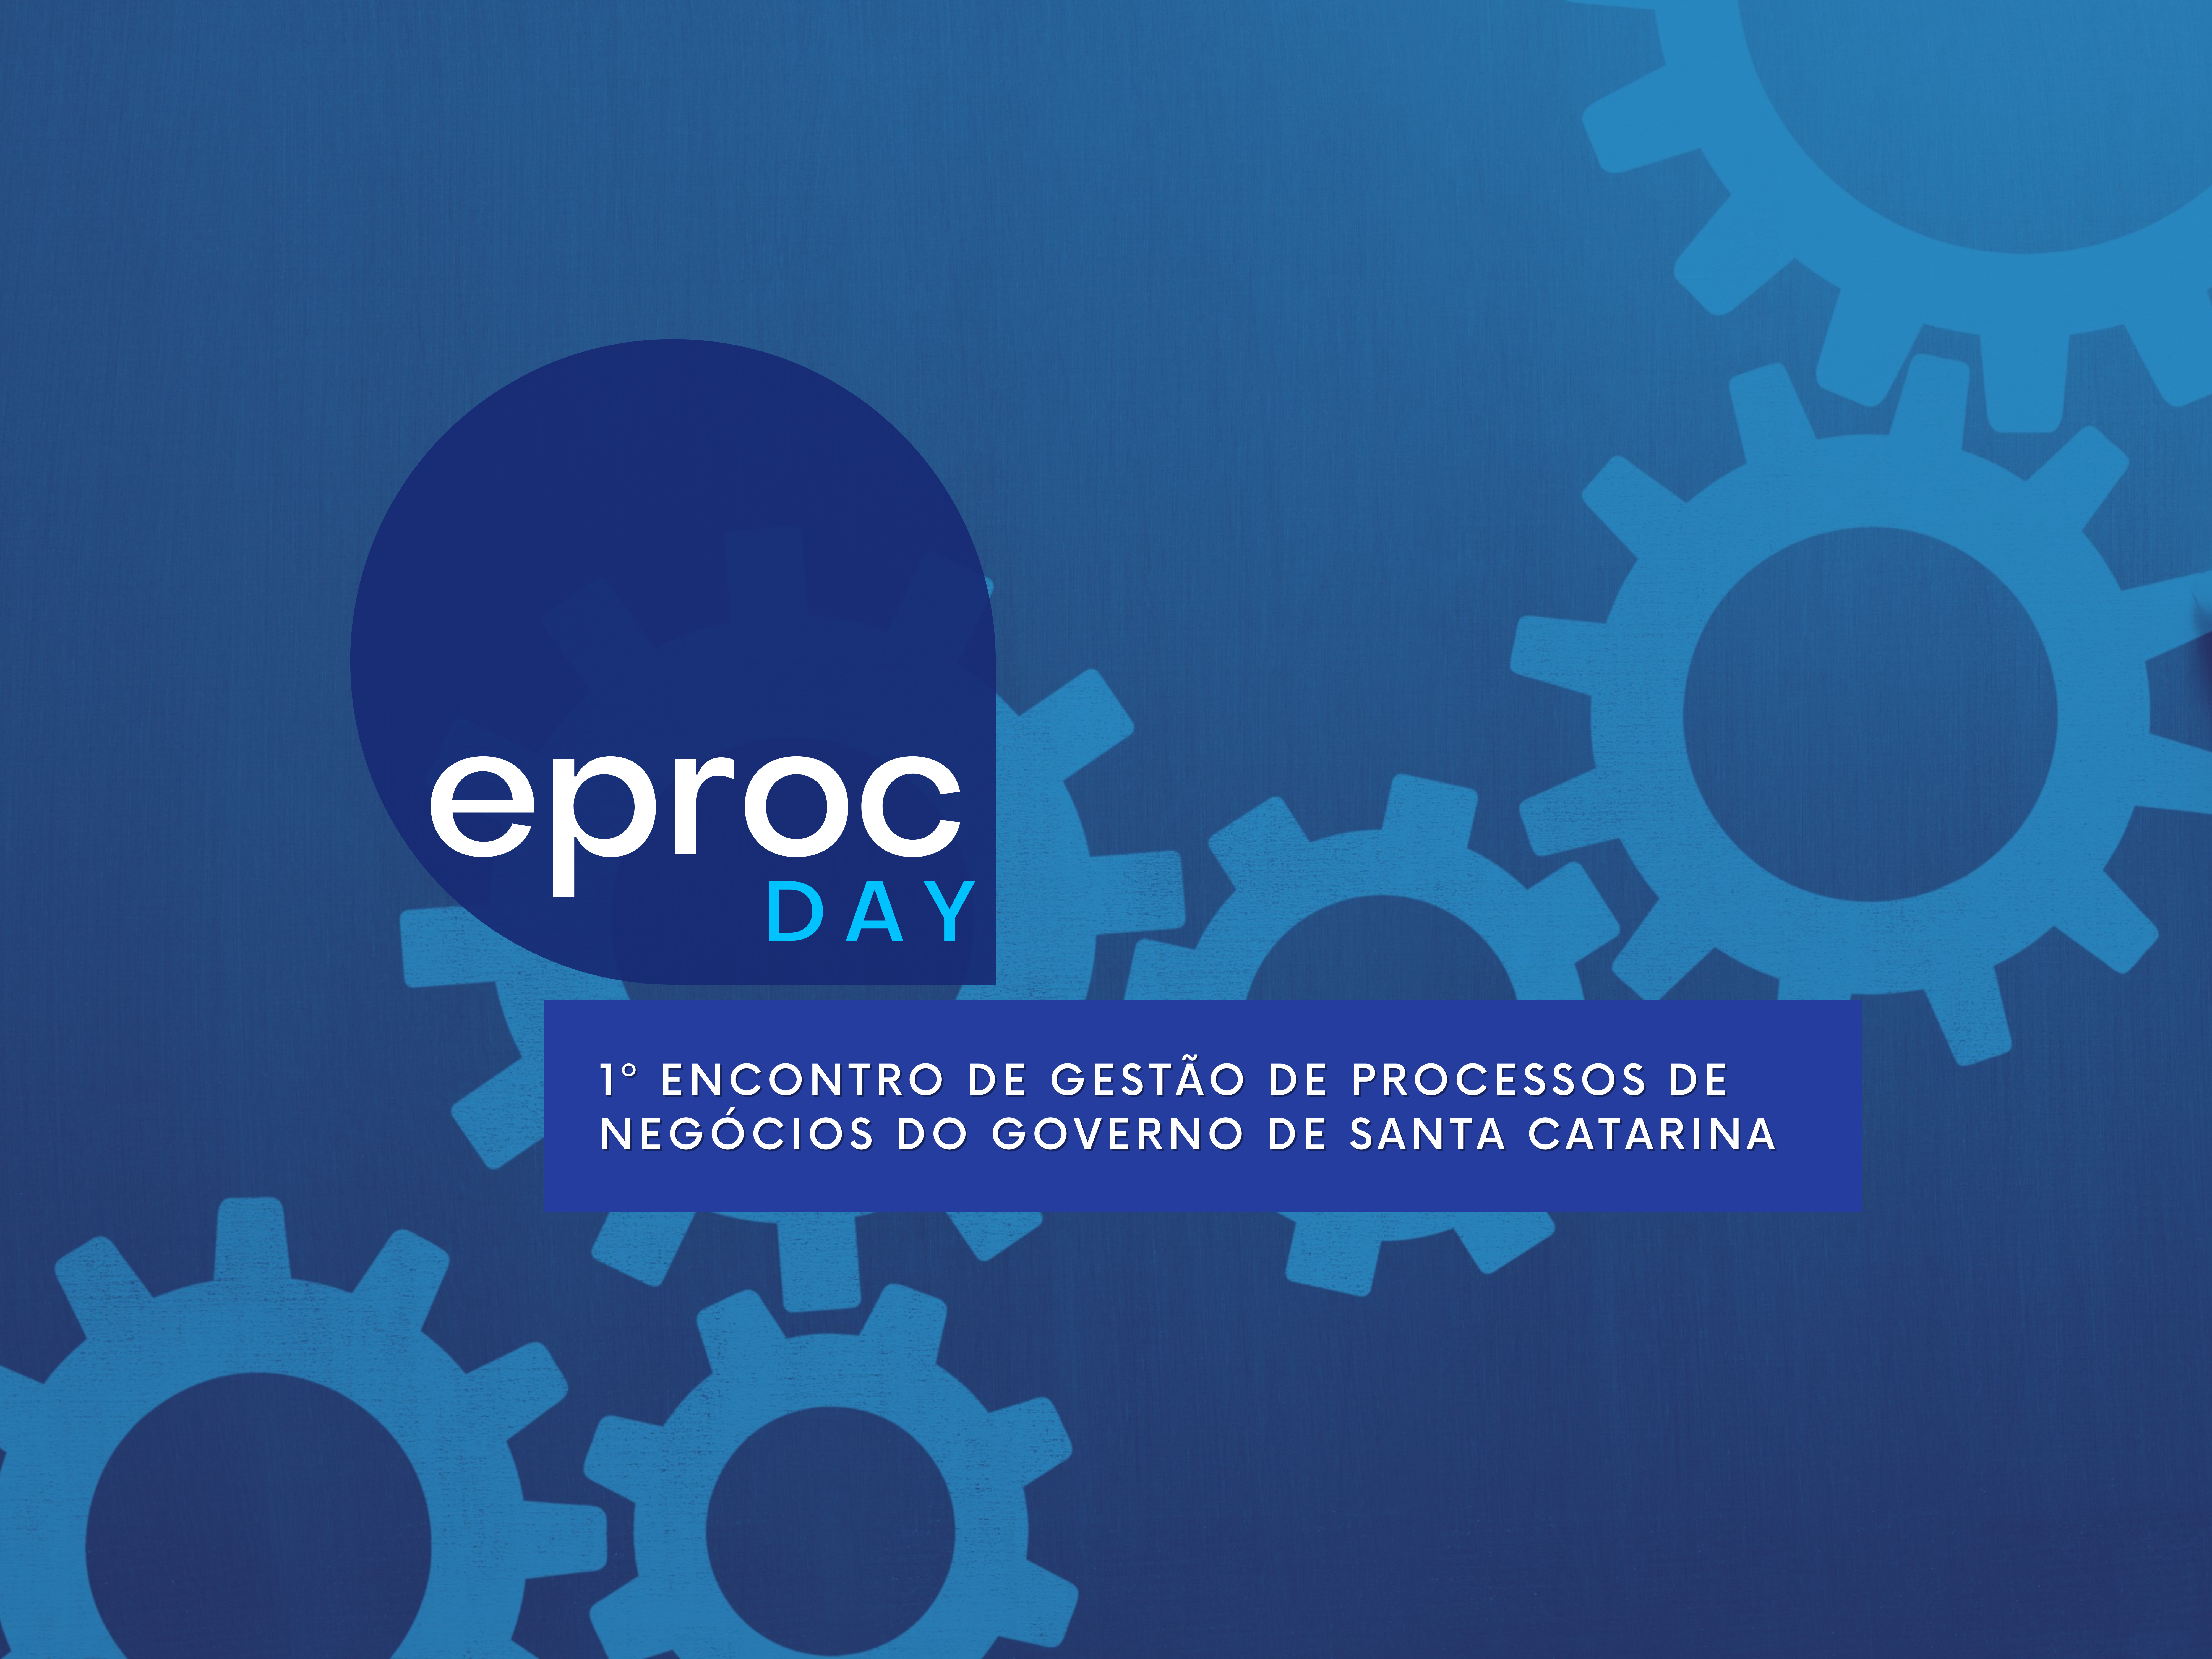 Eproc promove 1o Encontro de Gestão de Processos de Negócios do Governo de Santa Catarina (Eproc Day)